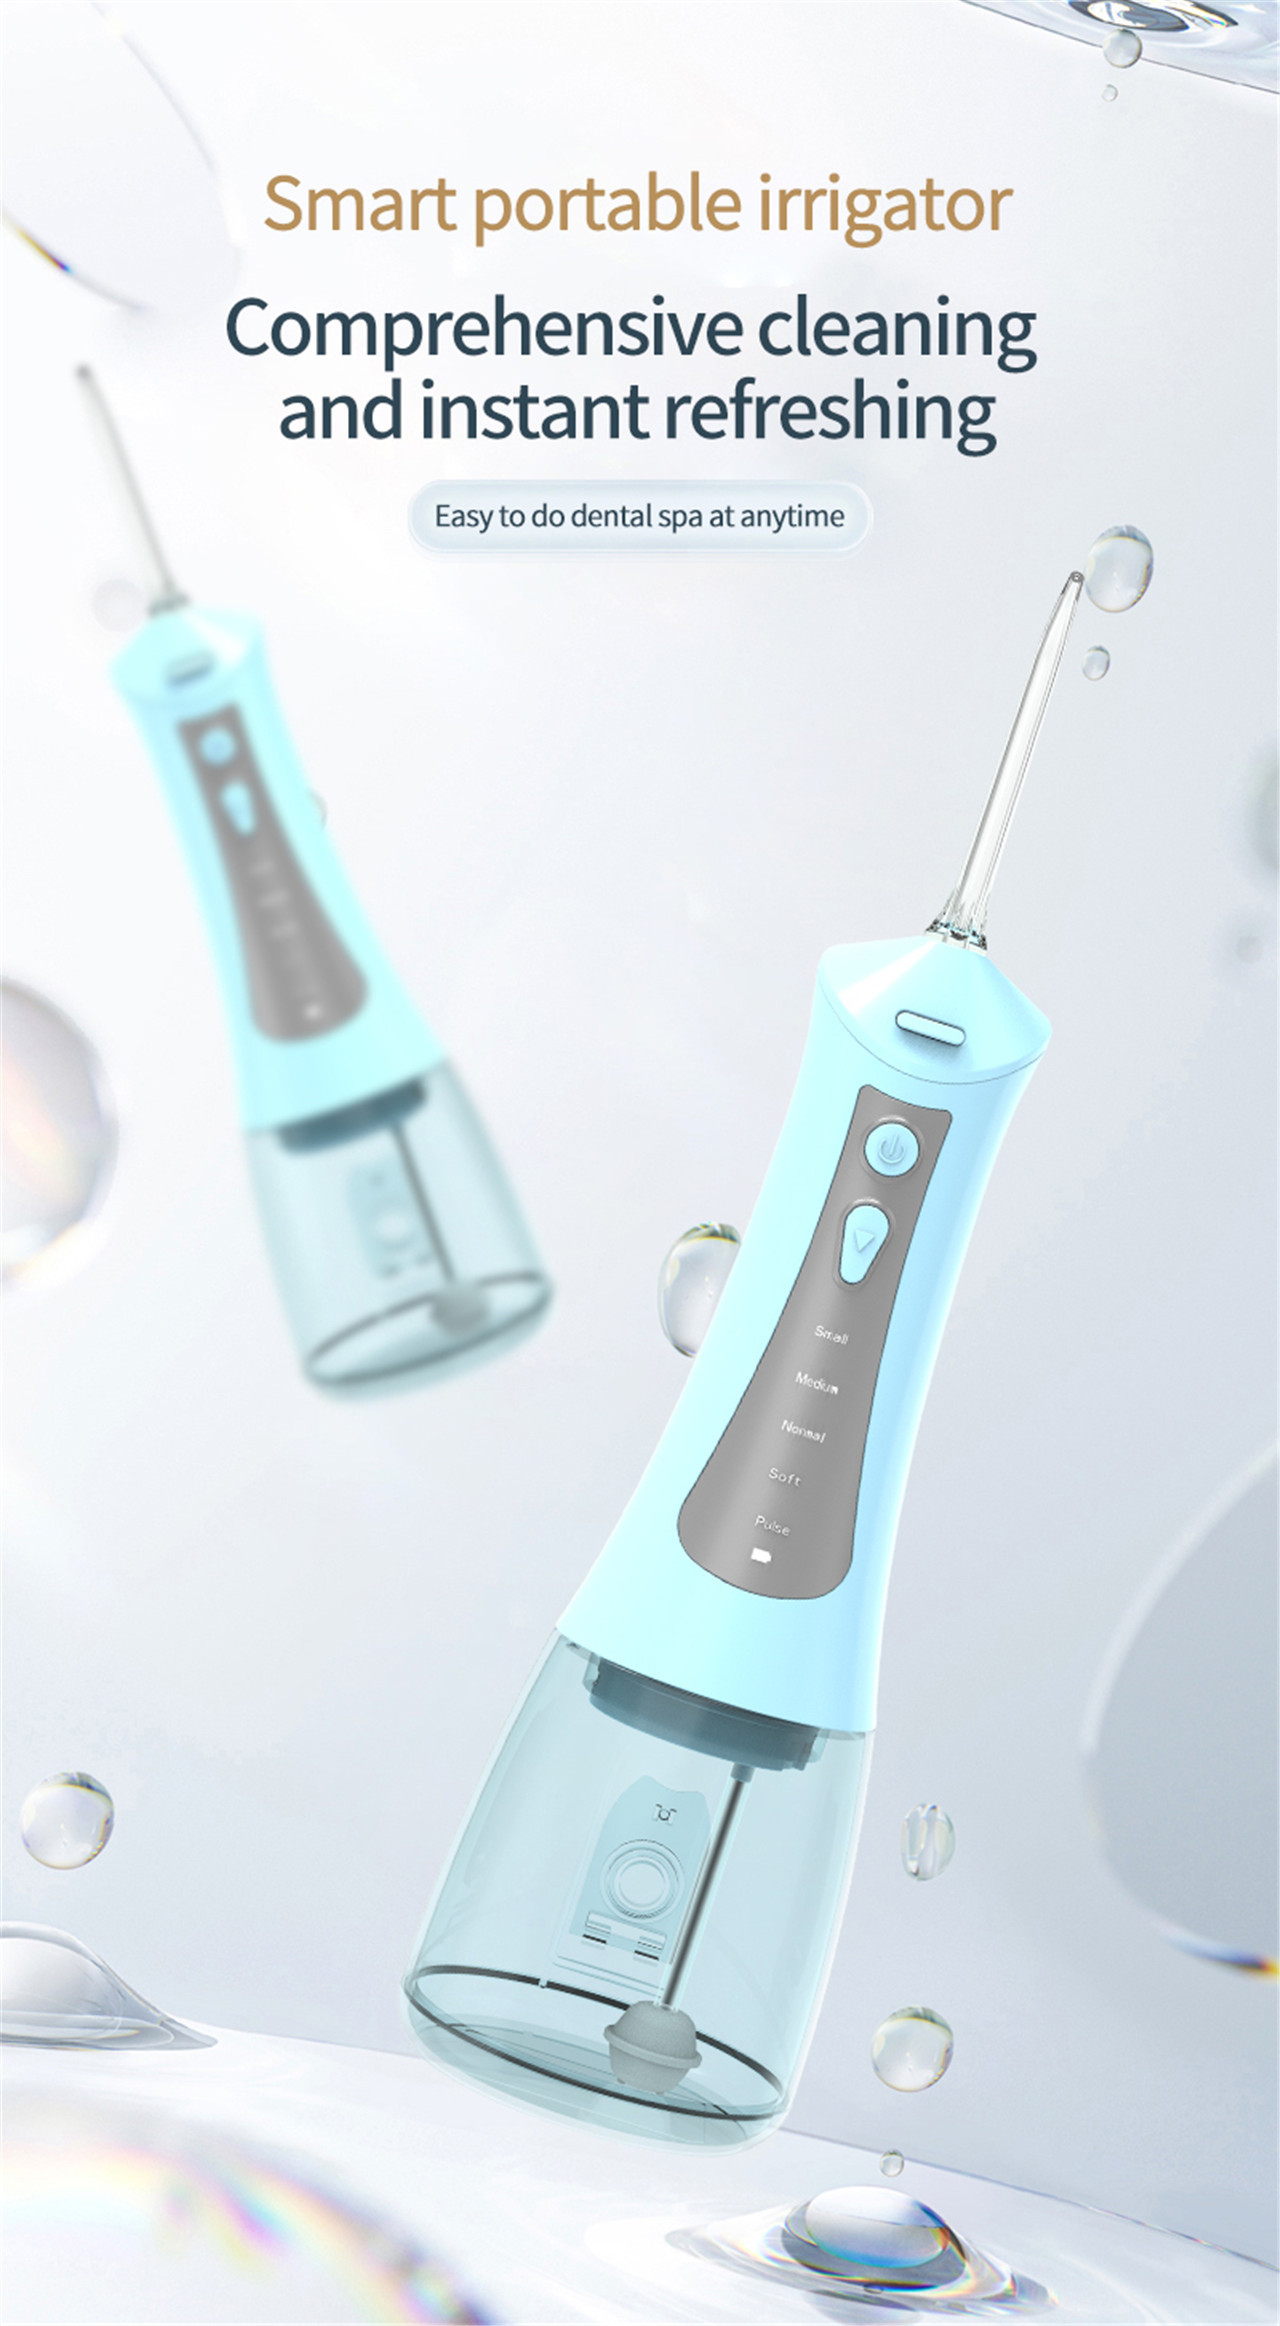 wysokociśnieniowy irygator dentystyczny do pielęgnacji jamy ustnej najlepszy elektryczny flosser do wody (1)